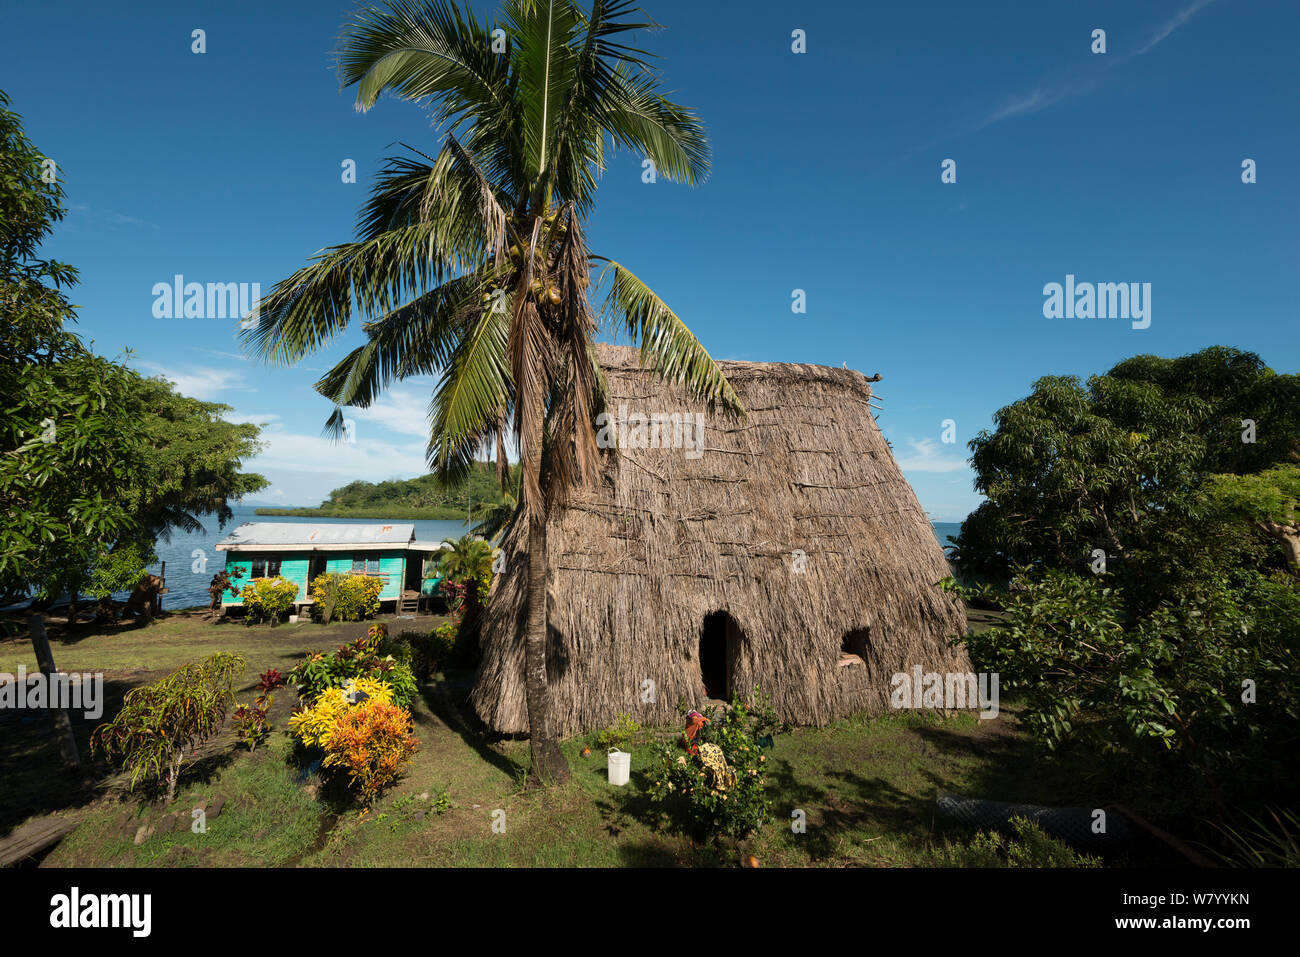 Bure traditionnel fidjien ou hut, Mali, Île Macuata Province, Fidji, Pacifique Sud. Août 2013 Banque D'Images